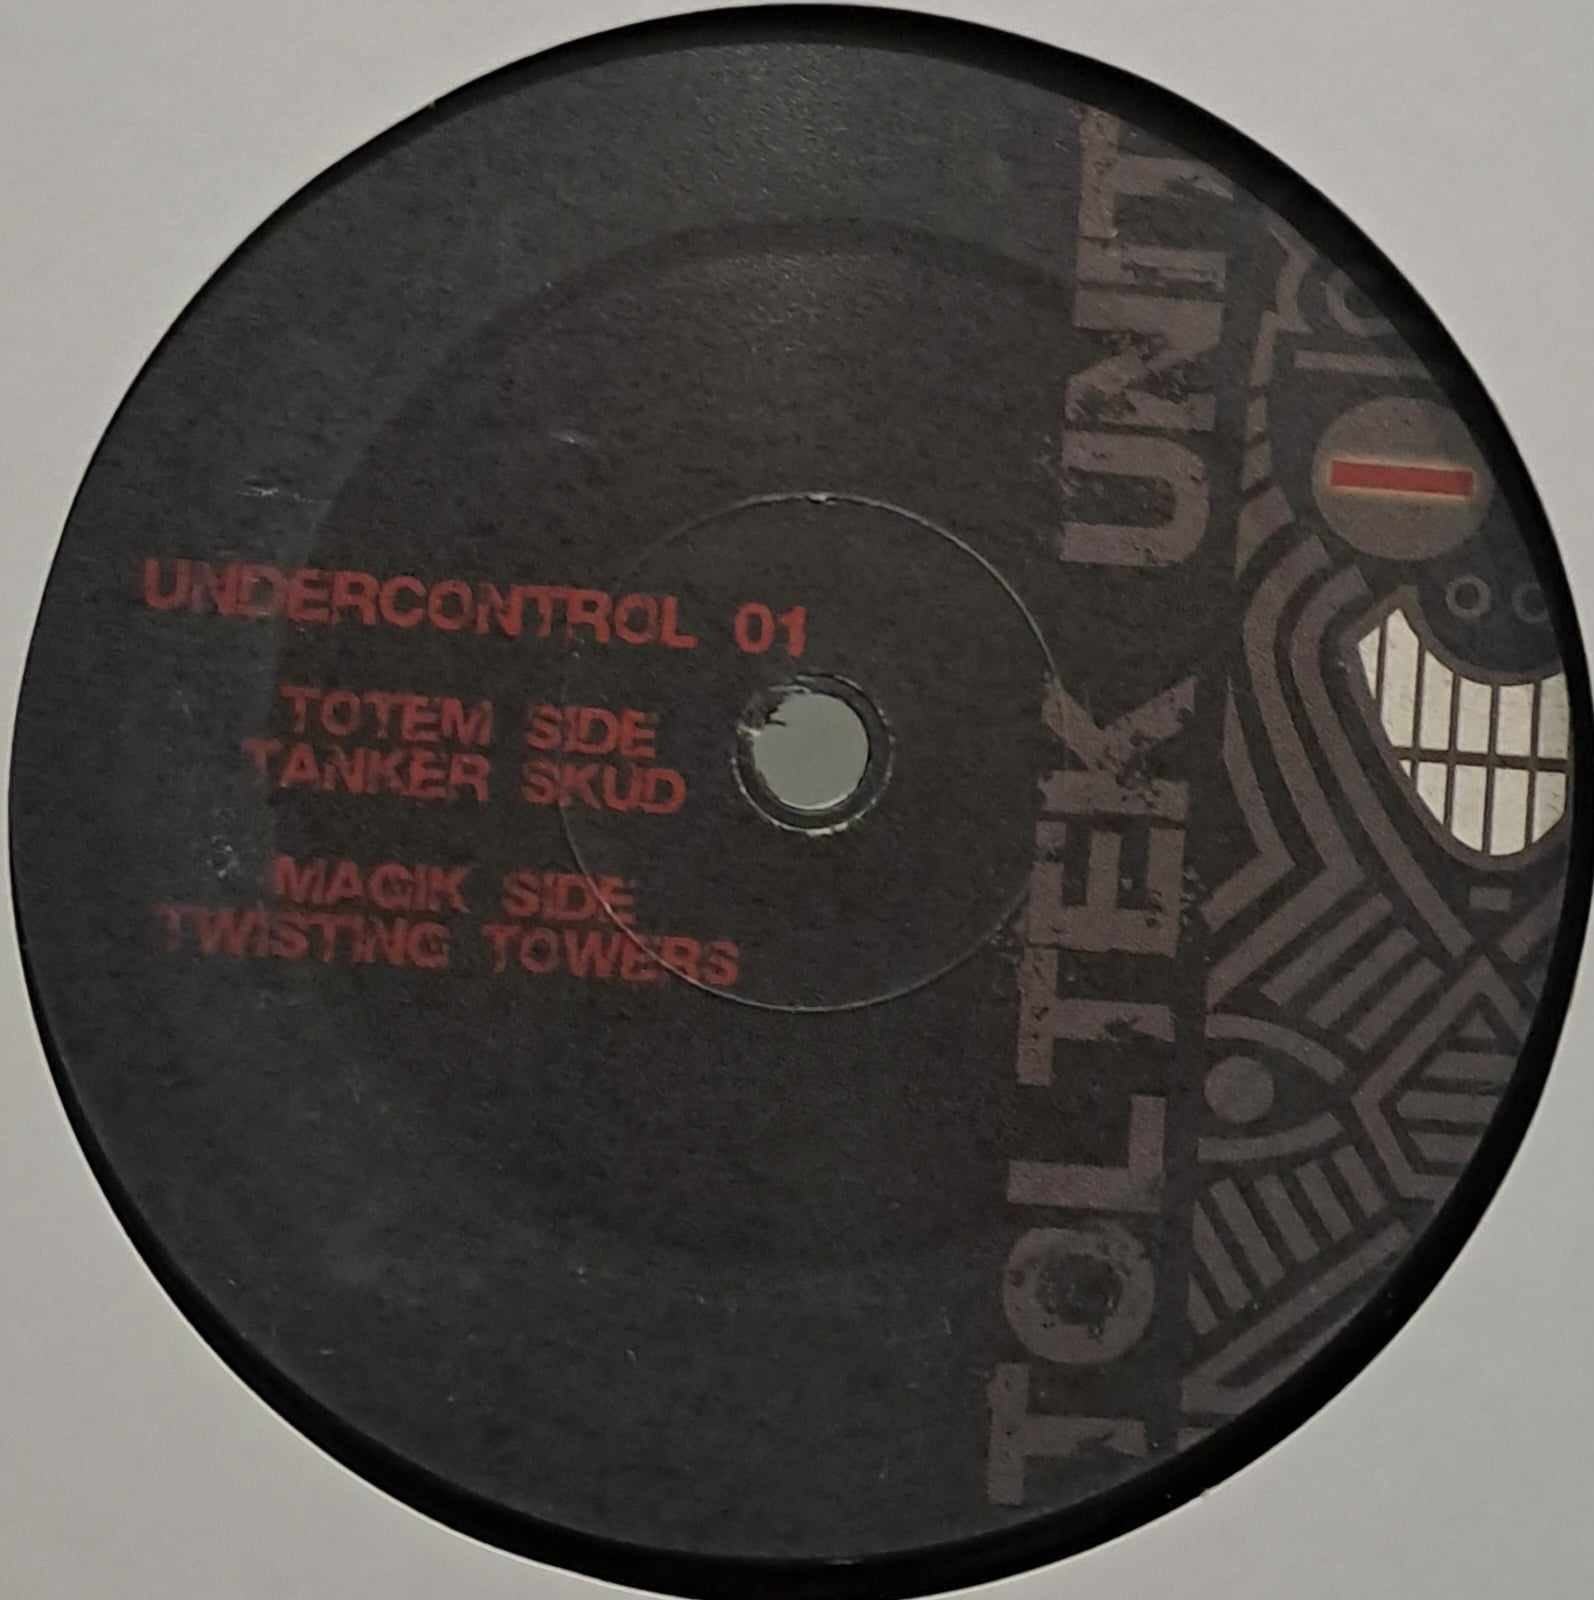 Undercontrol 01 - vinyle freetekno